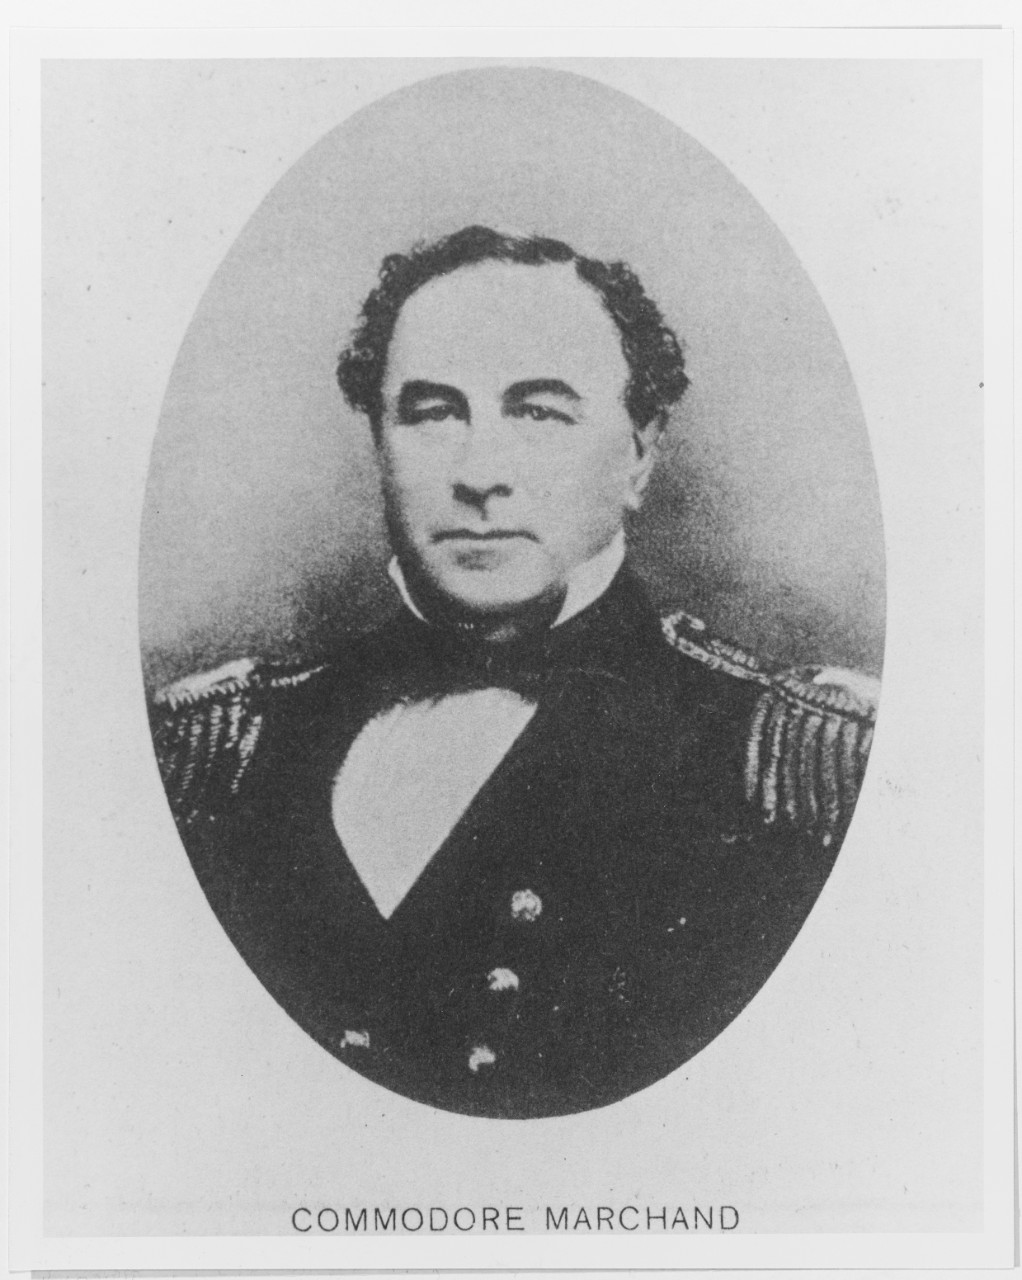 John B. Marchand, Commodore, U.S. Navy